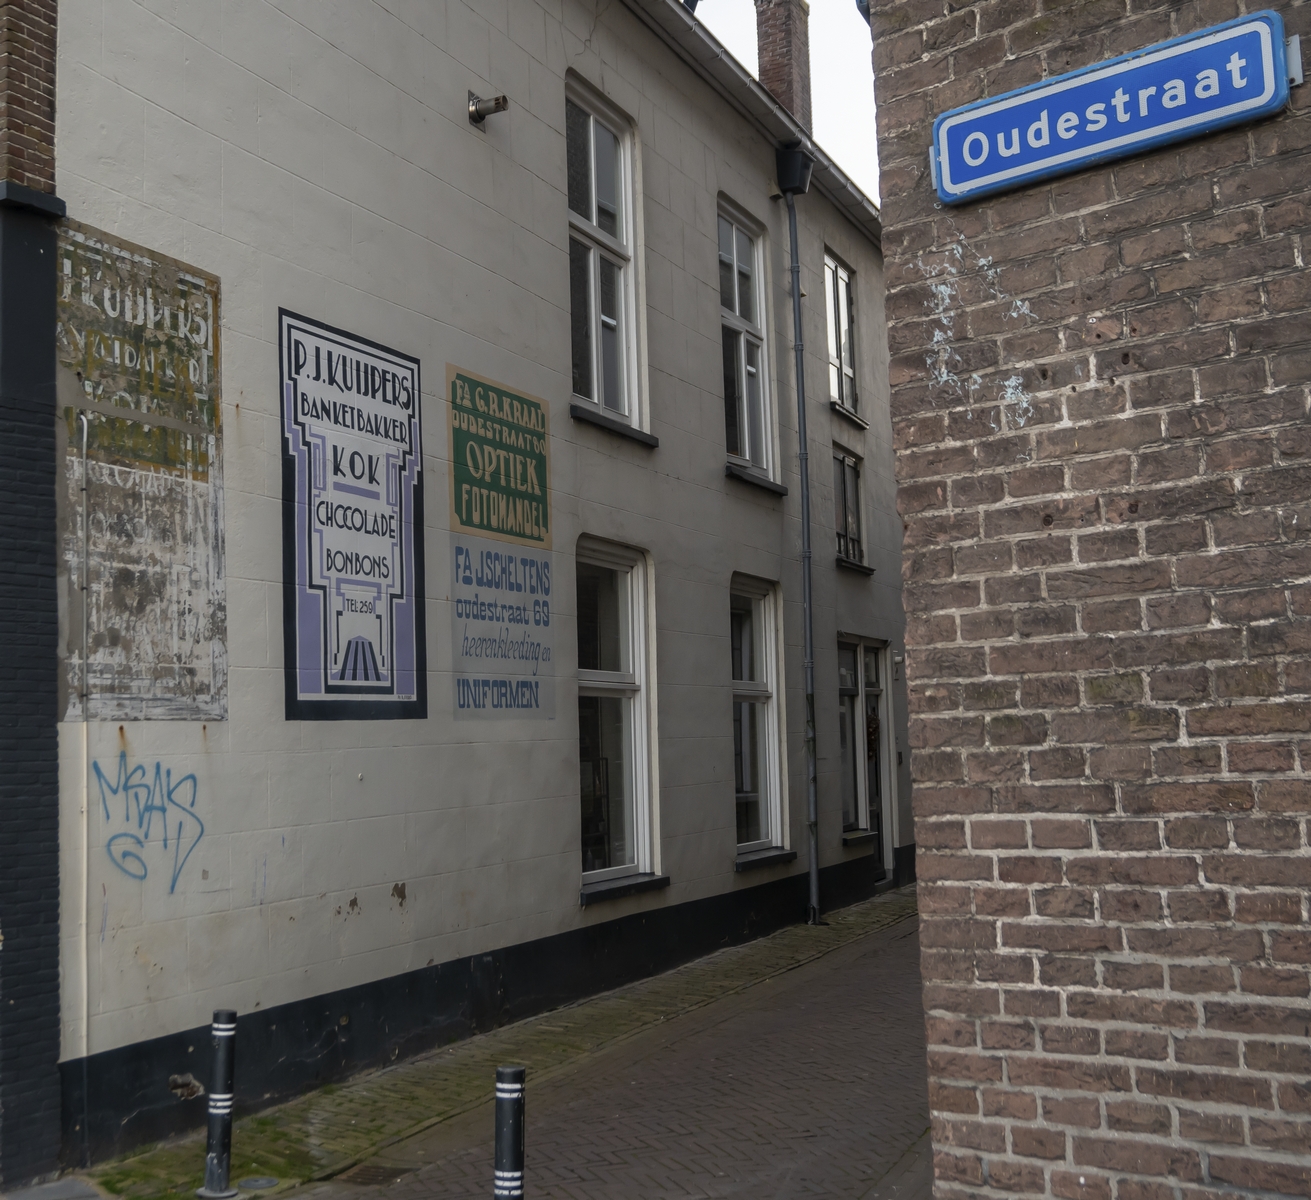 Historische Vereniging Jan van Arkel neemt onderhoud ‘Kleine Objecten’ over van Stadsherstel Kampen